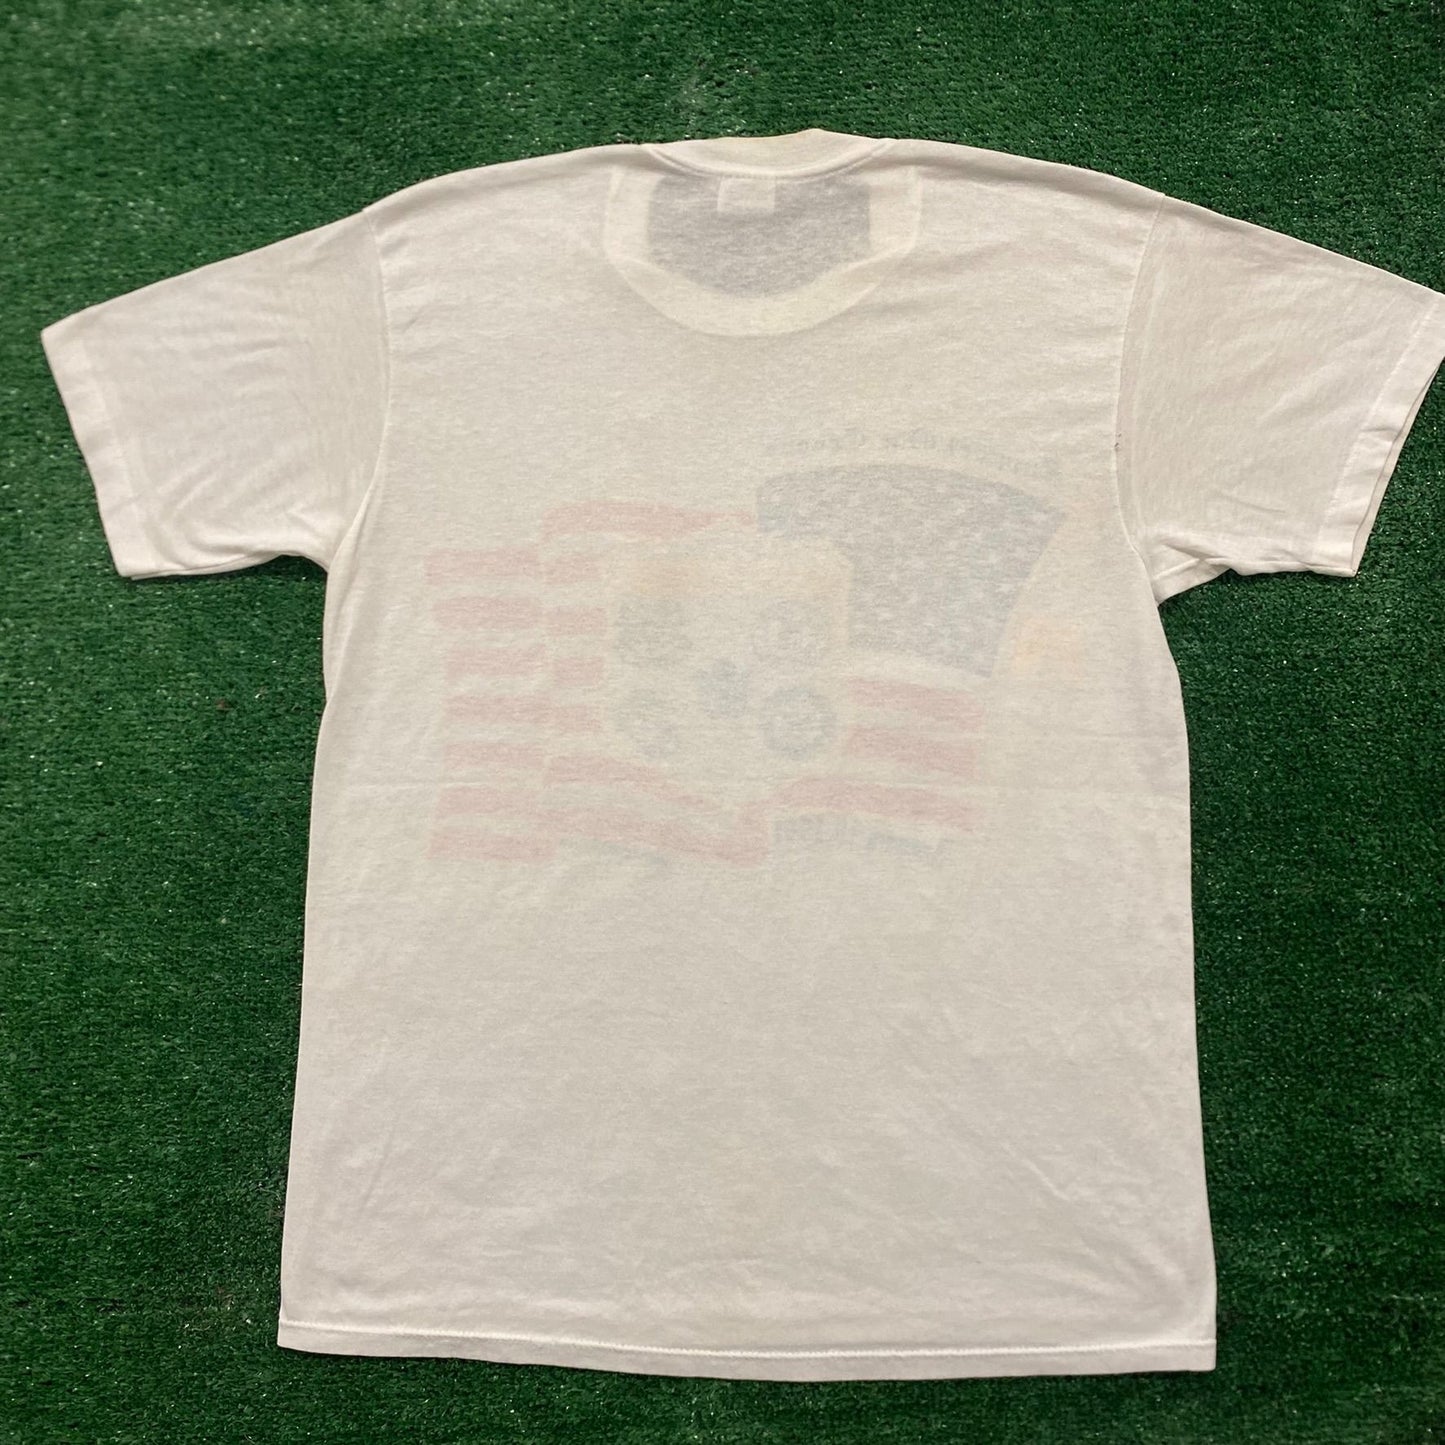 Vintage 90s Iraq War Troops Single Stitch Military T-Shirt